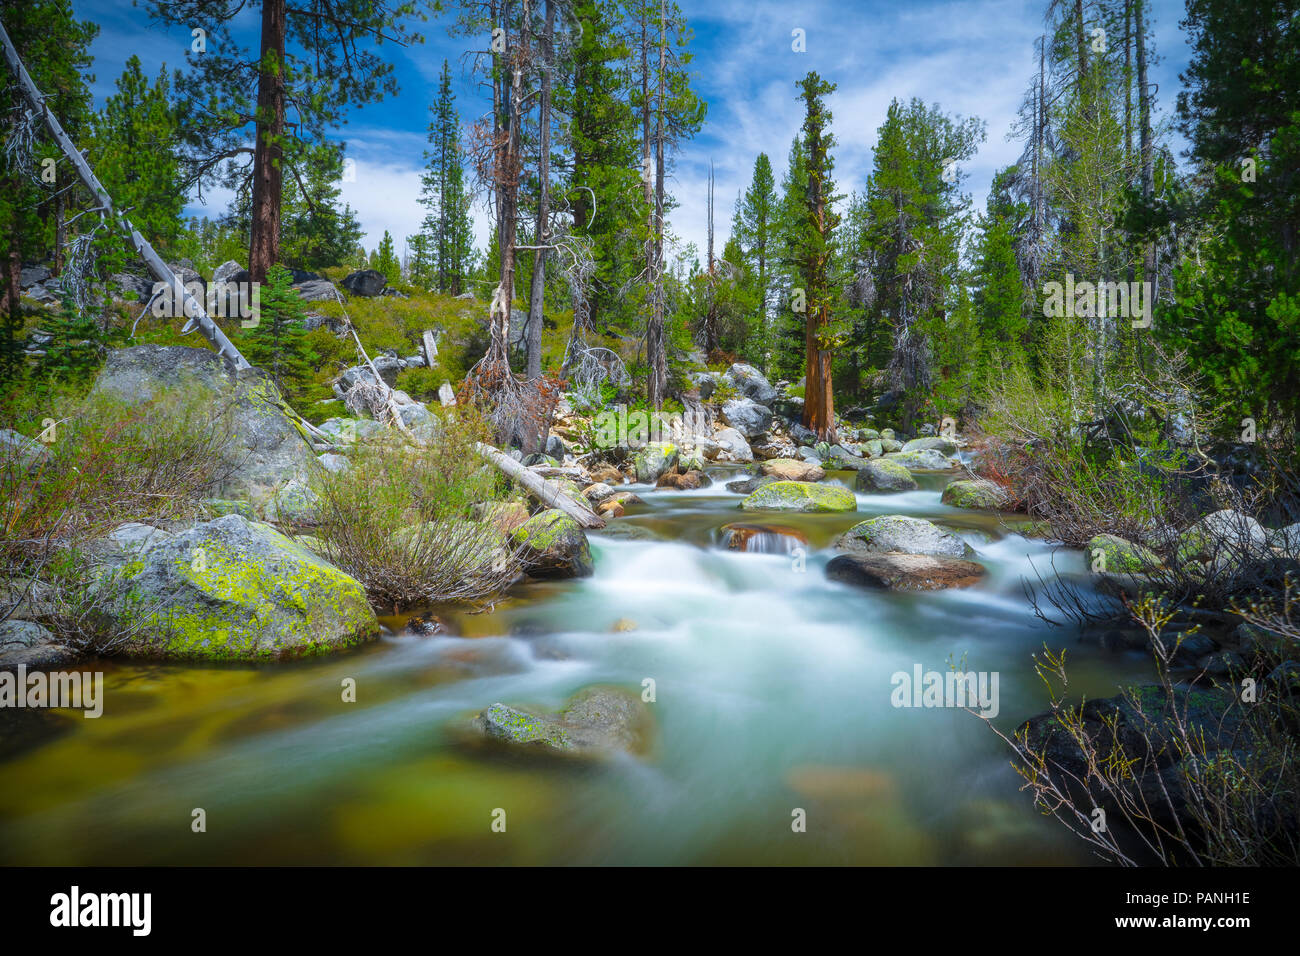 Beau paysage d'eau courante à Yosemite Creek, dans la forêt le long de Tioga Pass (Route 120) - Yosemite National Park Banque D'Images